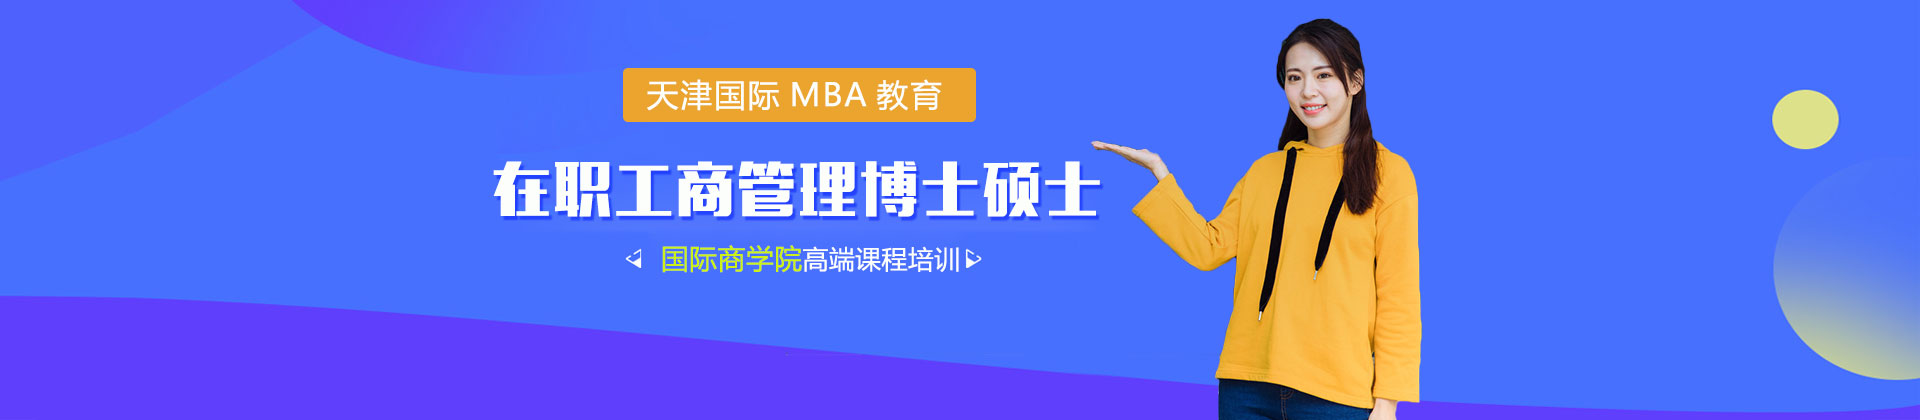 天津国际MBA教育